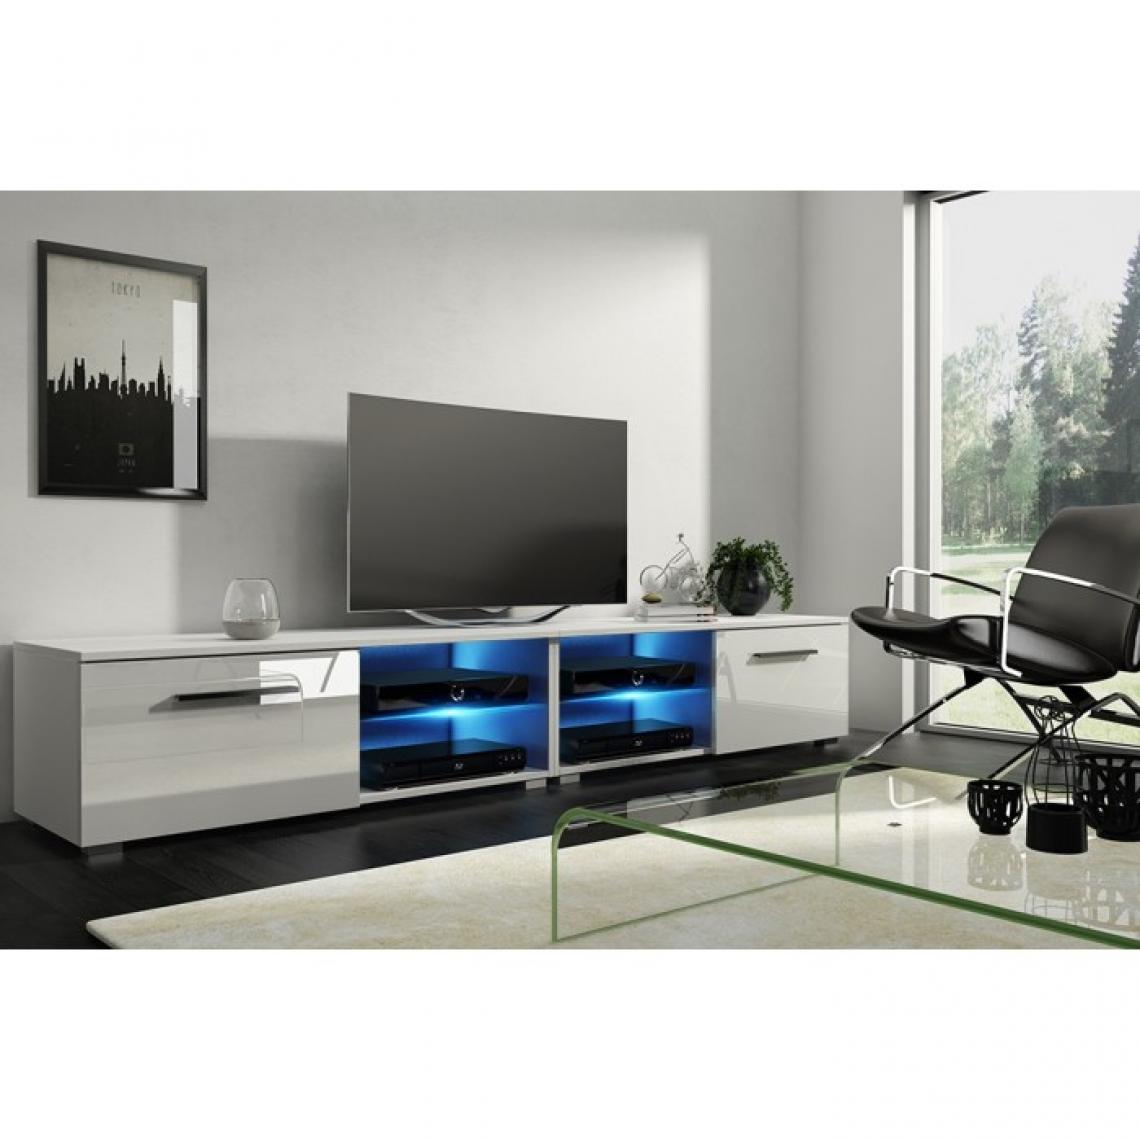 Hucoco - MOOD - Meuble TV style moderne avec LED salon séjour - 200x40x36 cm - Meuble de télévision avec rangements - Mat + Gloss - Blanc - Meubles TV, Hi-Fi